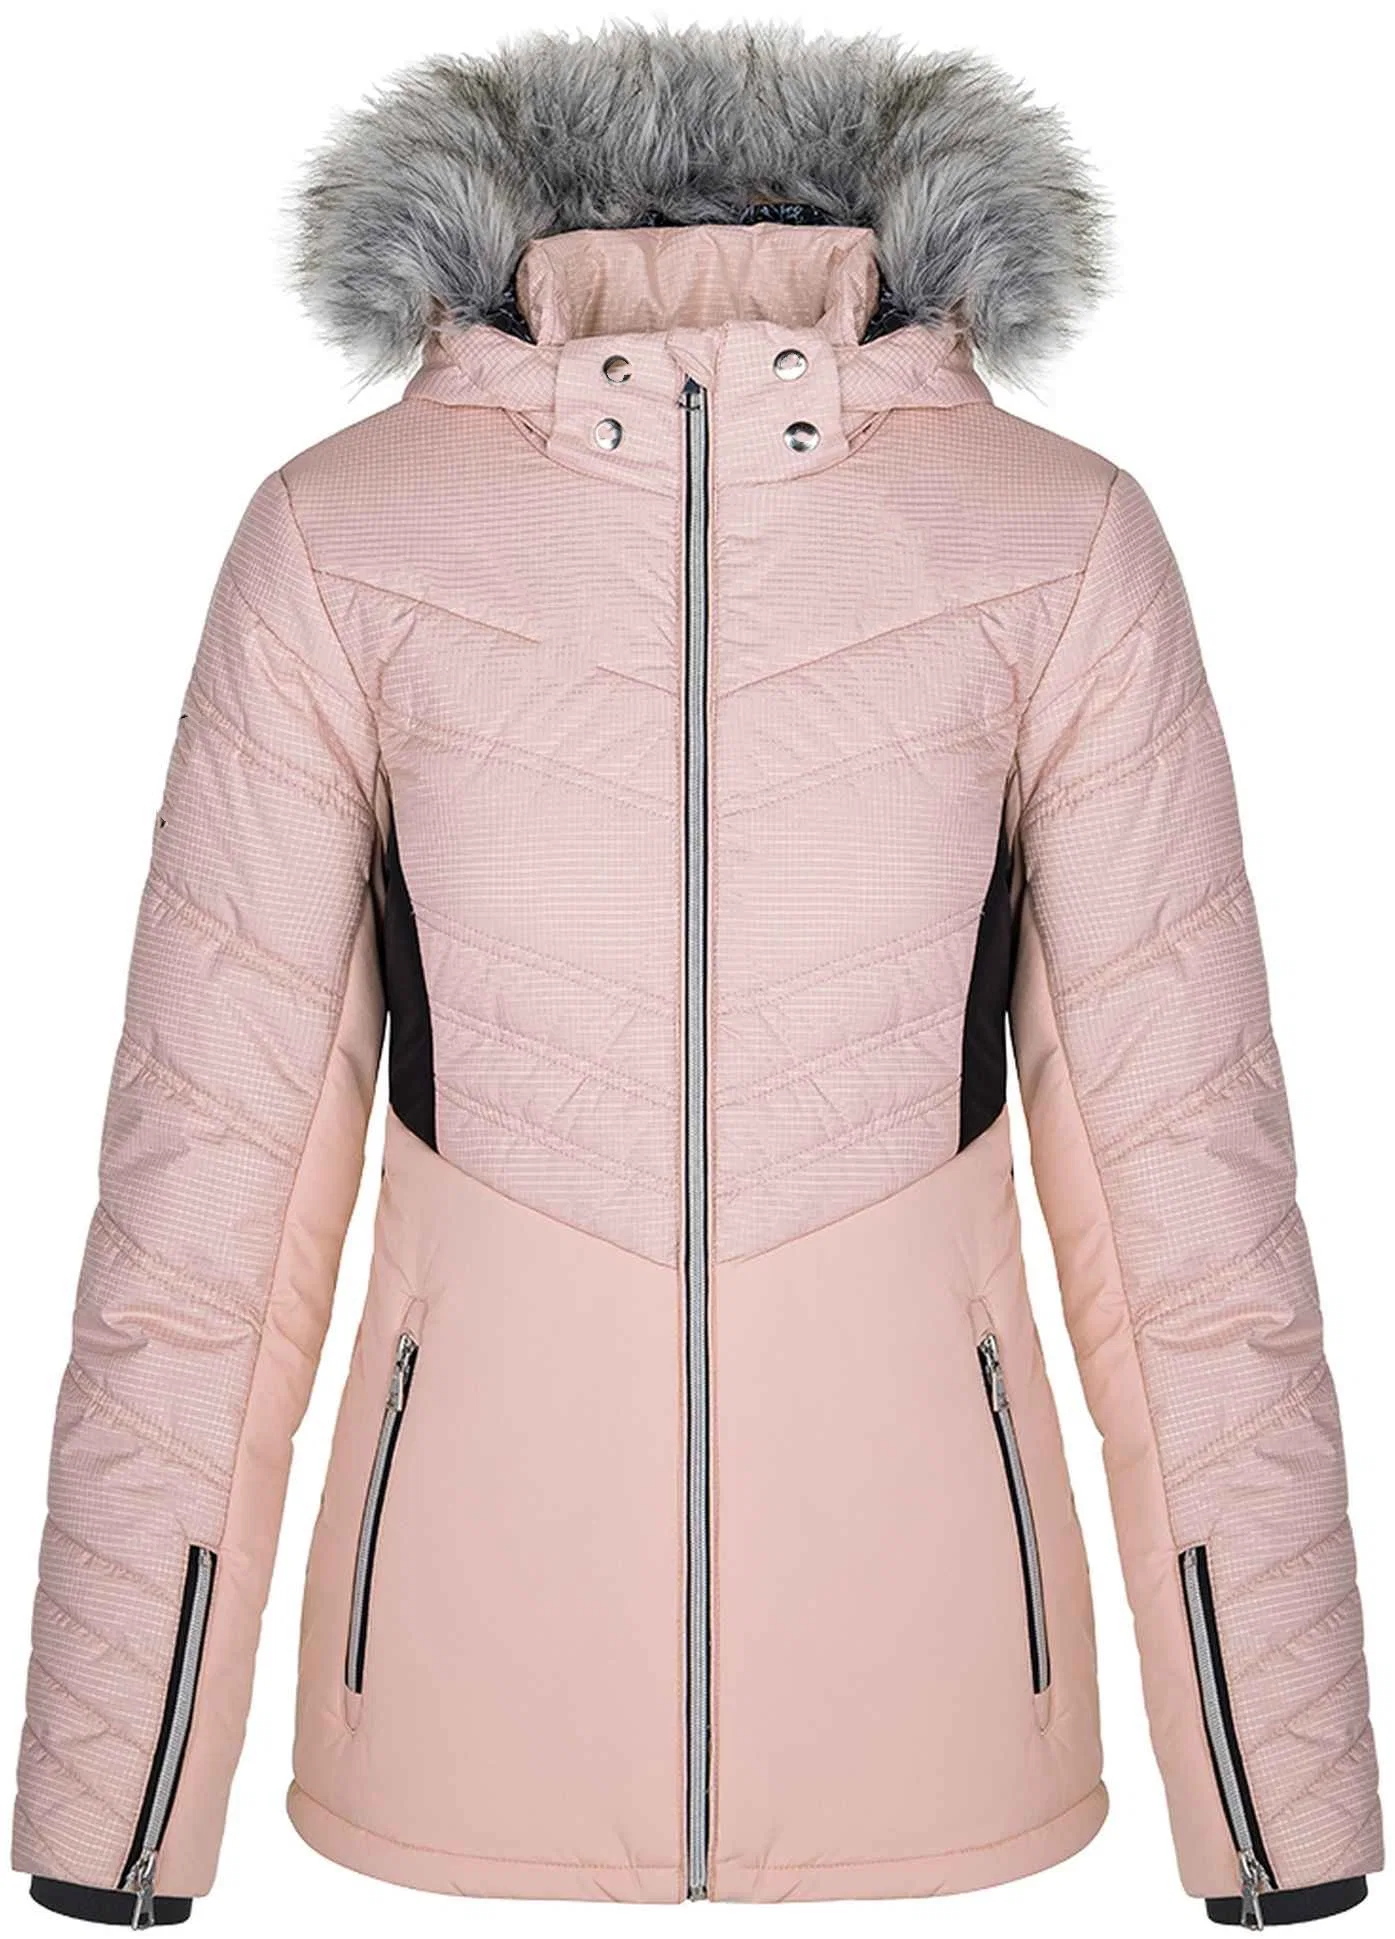 Personalized Winter Outdoor Ski Jackets Snow Wear for Women Sportswear